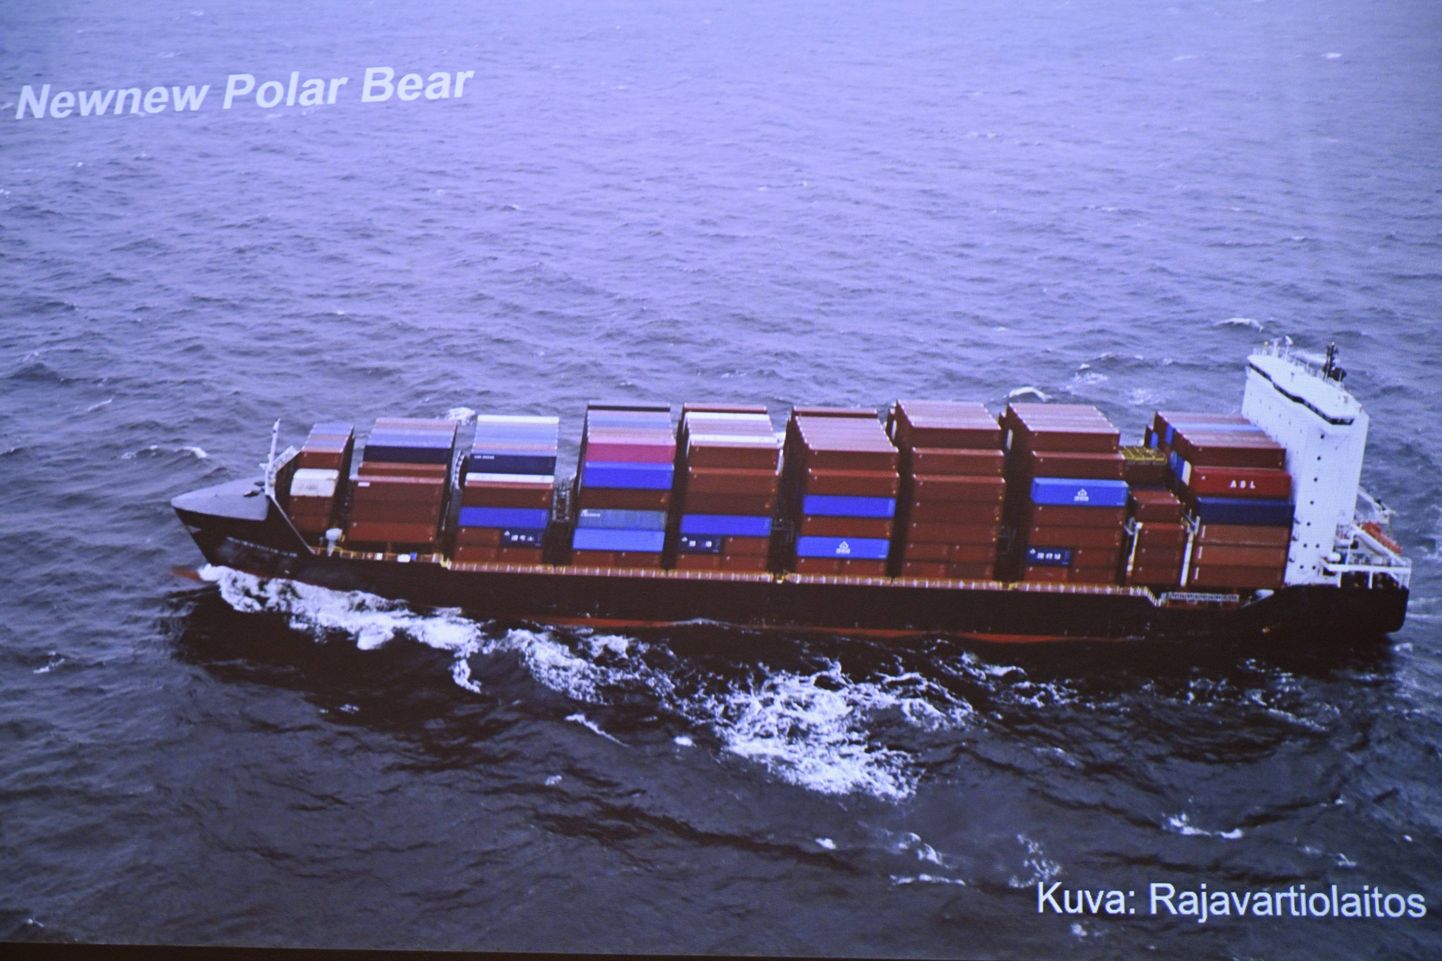 Soome piirivalve foto Hongkongis registrisse kantud kaubalaevast Newnew Polar Bear, mida nähti liikumas Balticconnectori gaasitrassi lähedal.